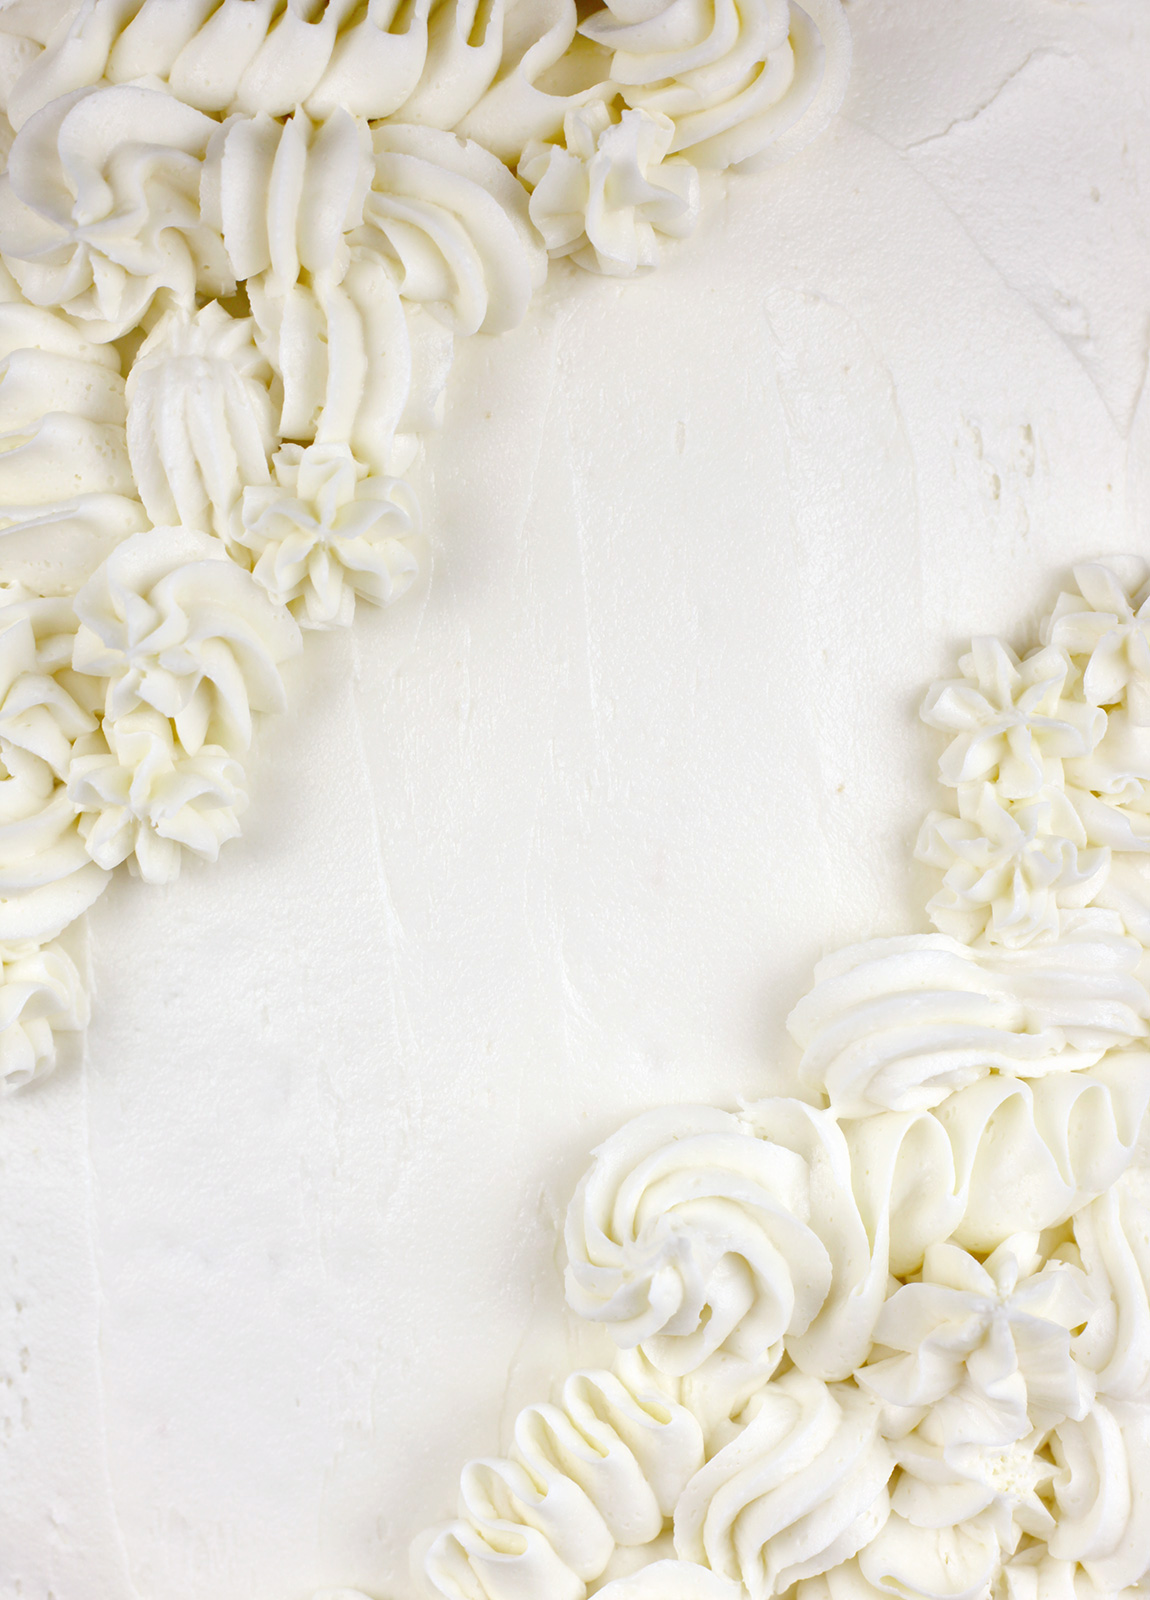 Snack torta s glazurom od vanilije